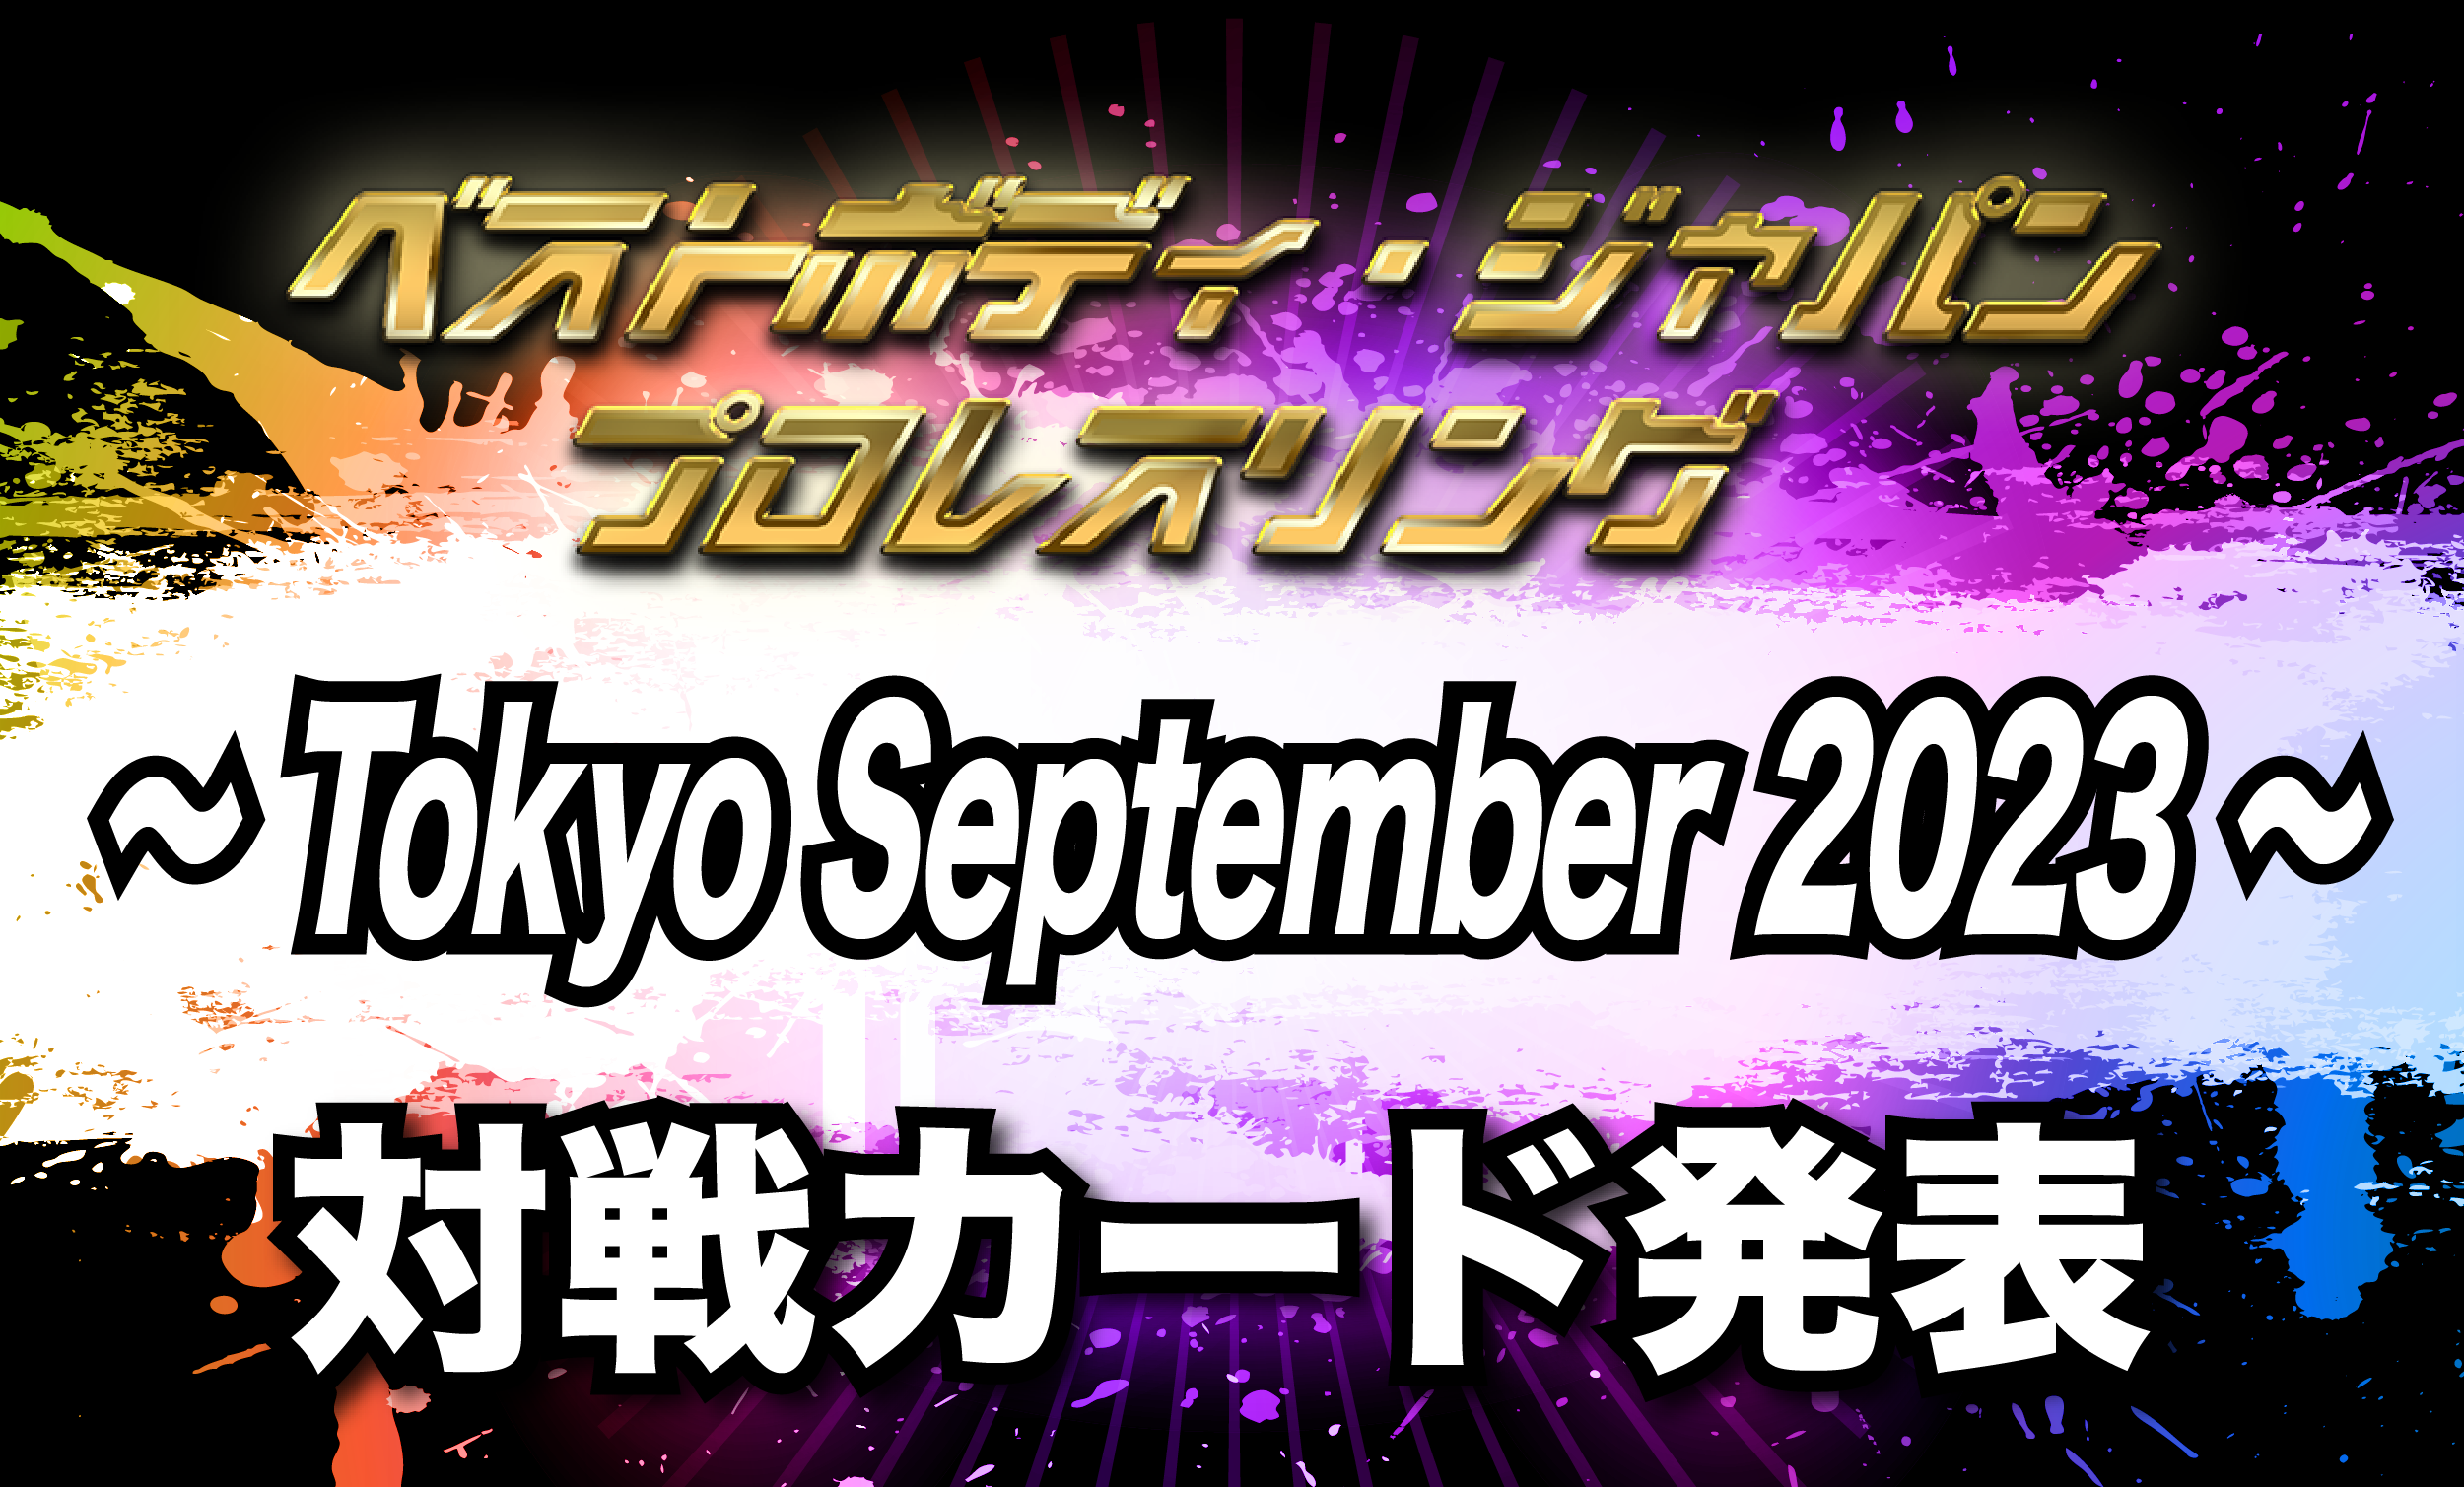 ベストボディ・ジャパンプロレスリング〜 Tokyo September 2023 〜対戦カード発表